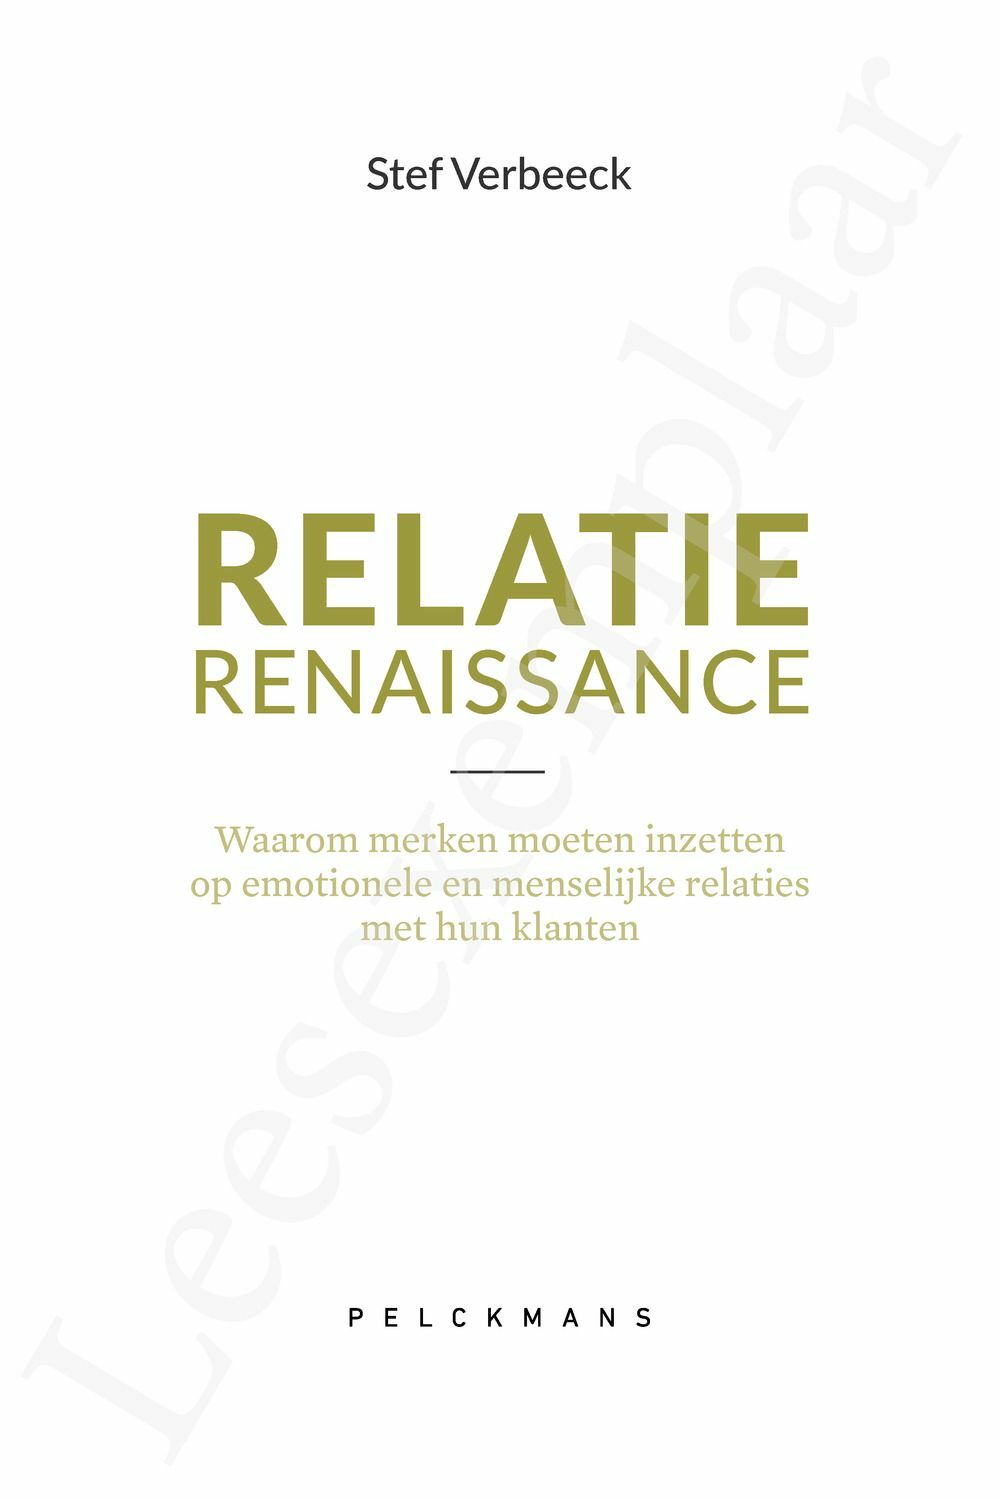 Preview: Relatie Renaissance